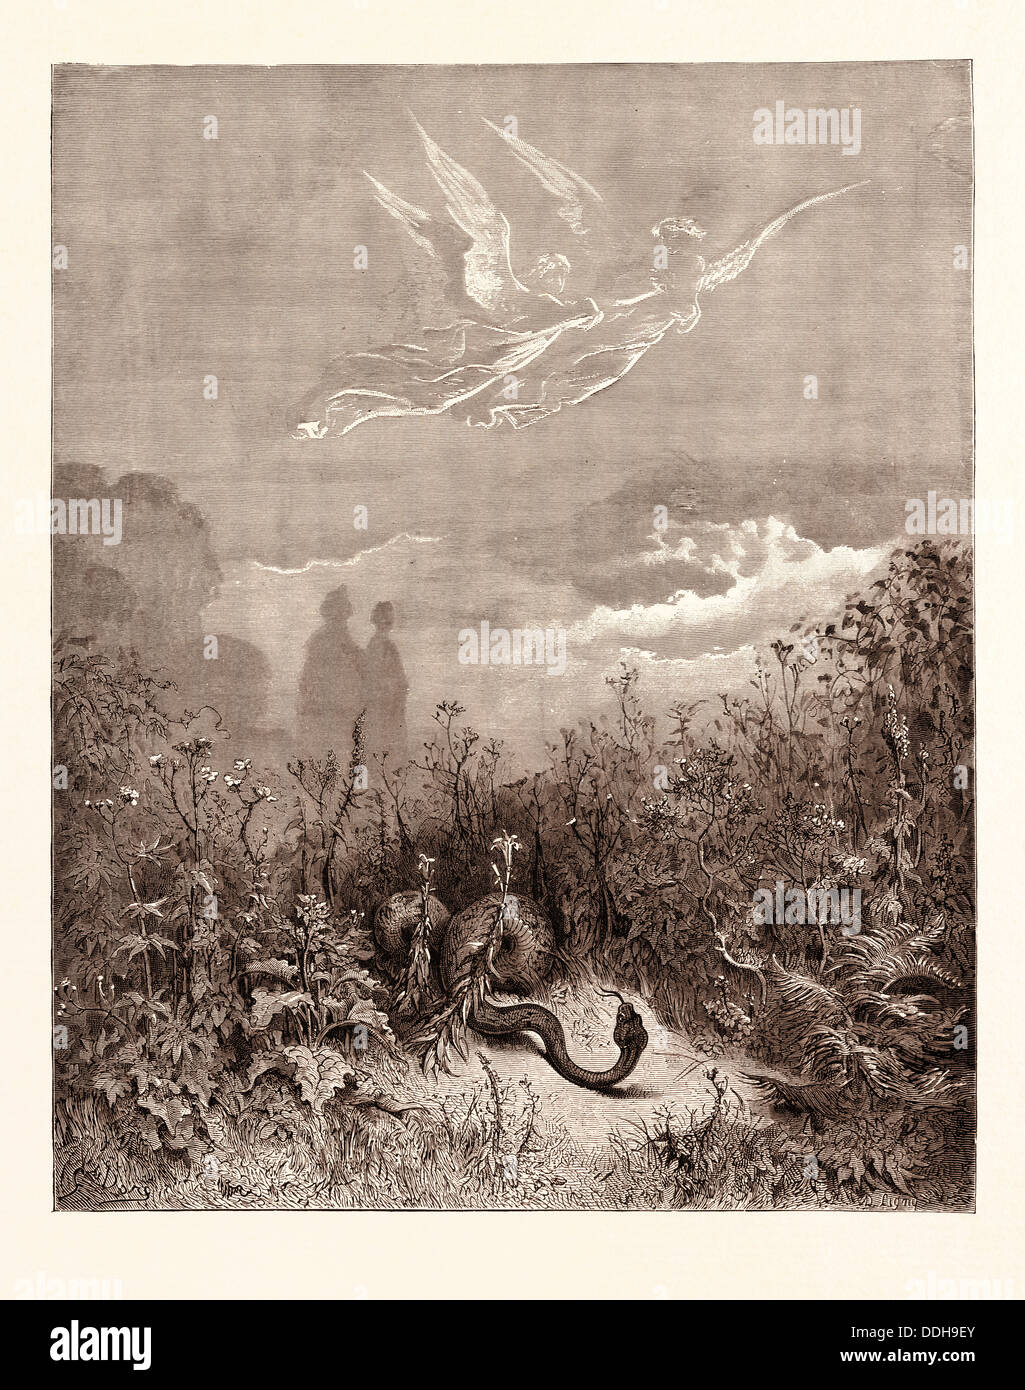 DANTE ET VIRGILE DANS LA VALLÉE heureuse, par Gustave Doré. Gustave Dore, 1832 - 1883, Français. Pour la gravure de purgatoire Dante Banque D'Images